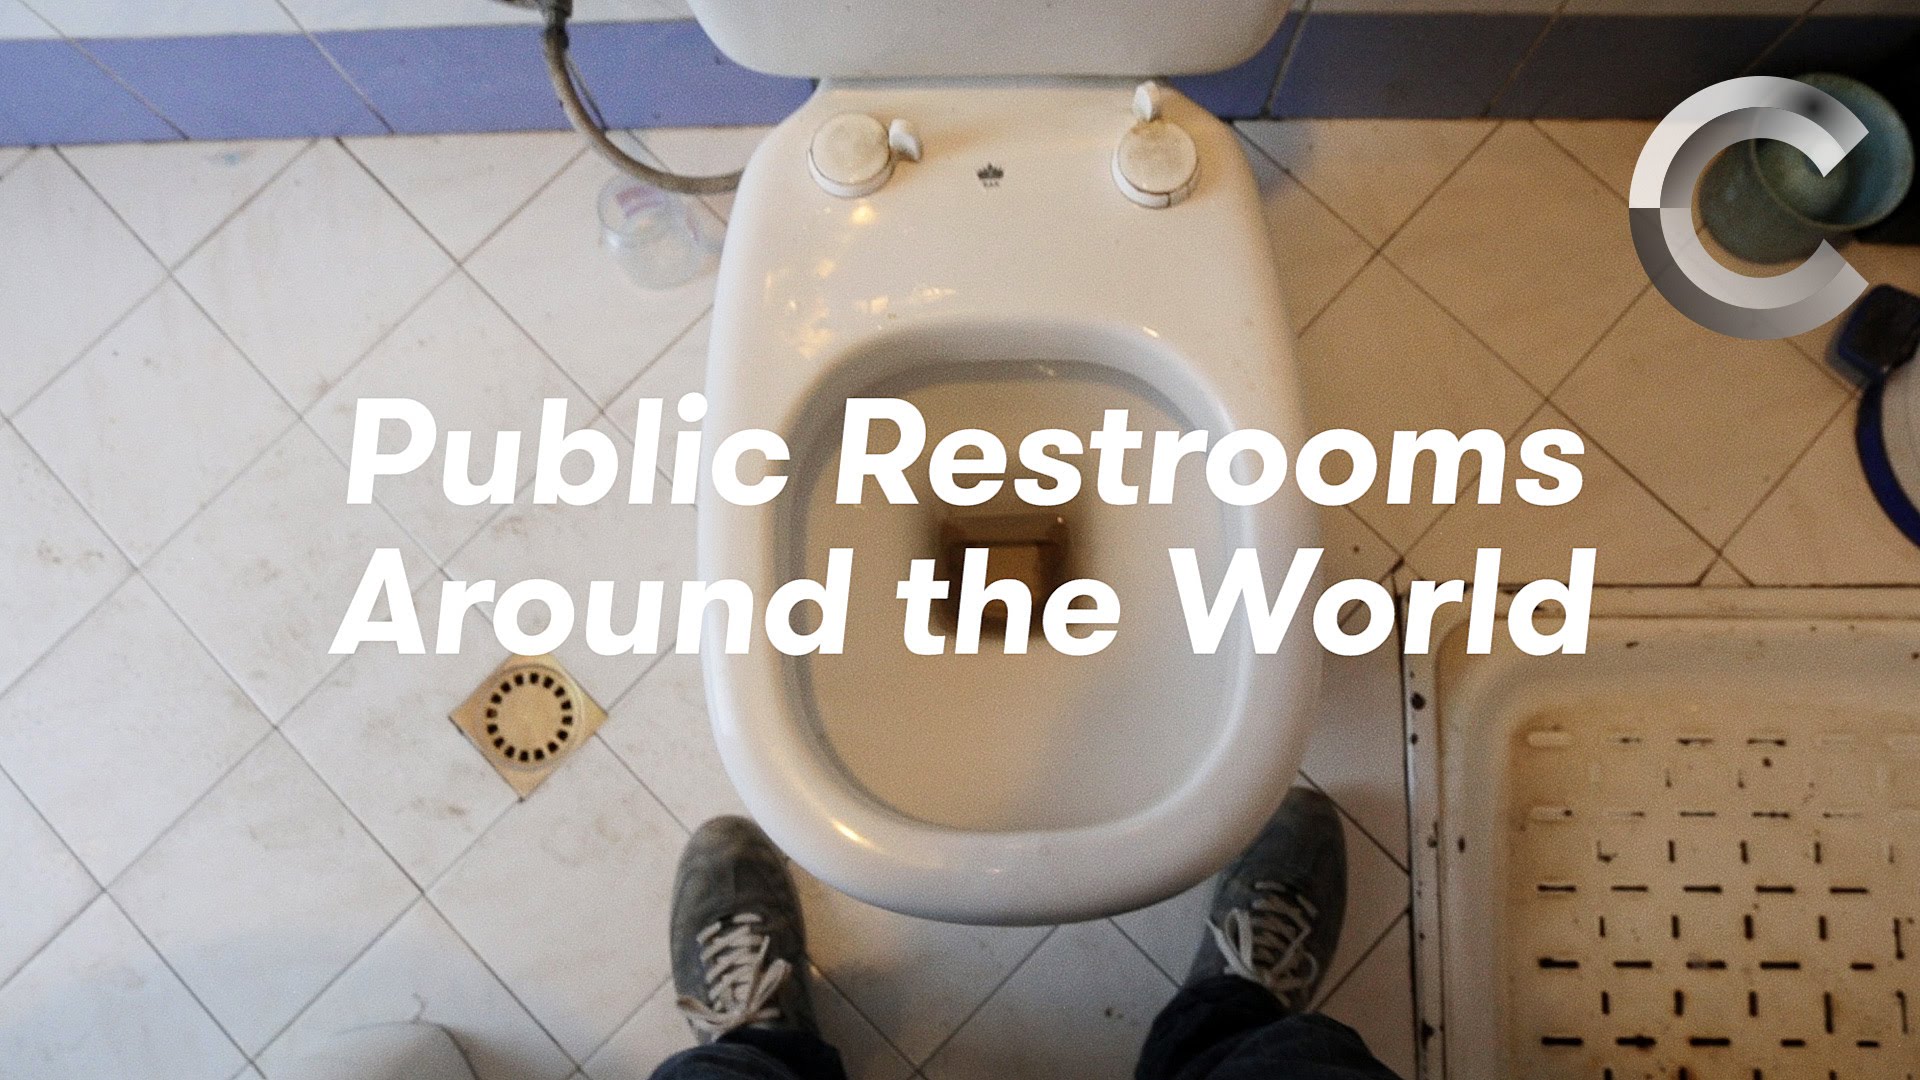 VIDEO: Kādas ir publiskās tualetes pasaulē? (Public Restrooms Around the World)